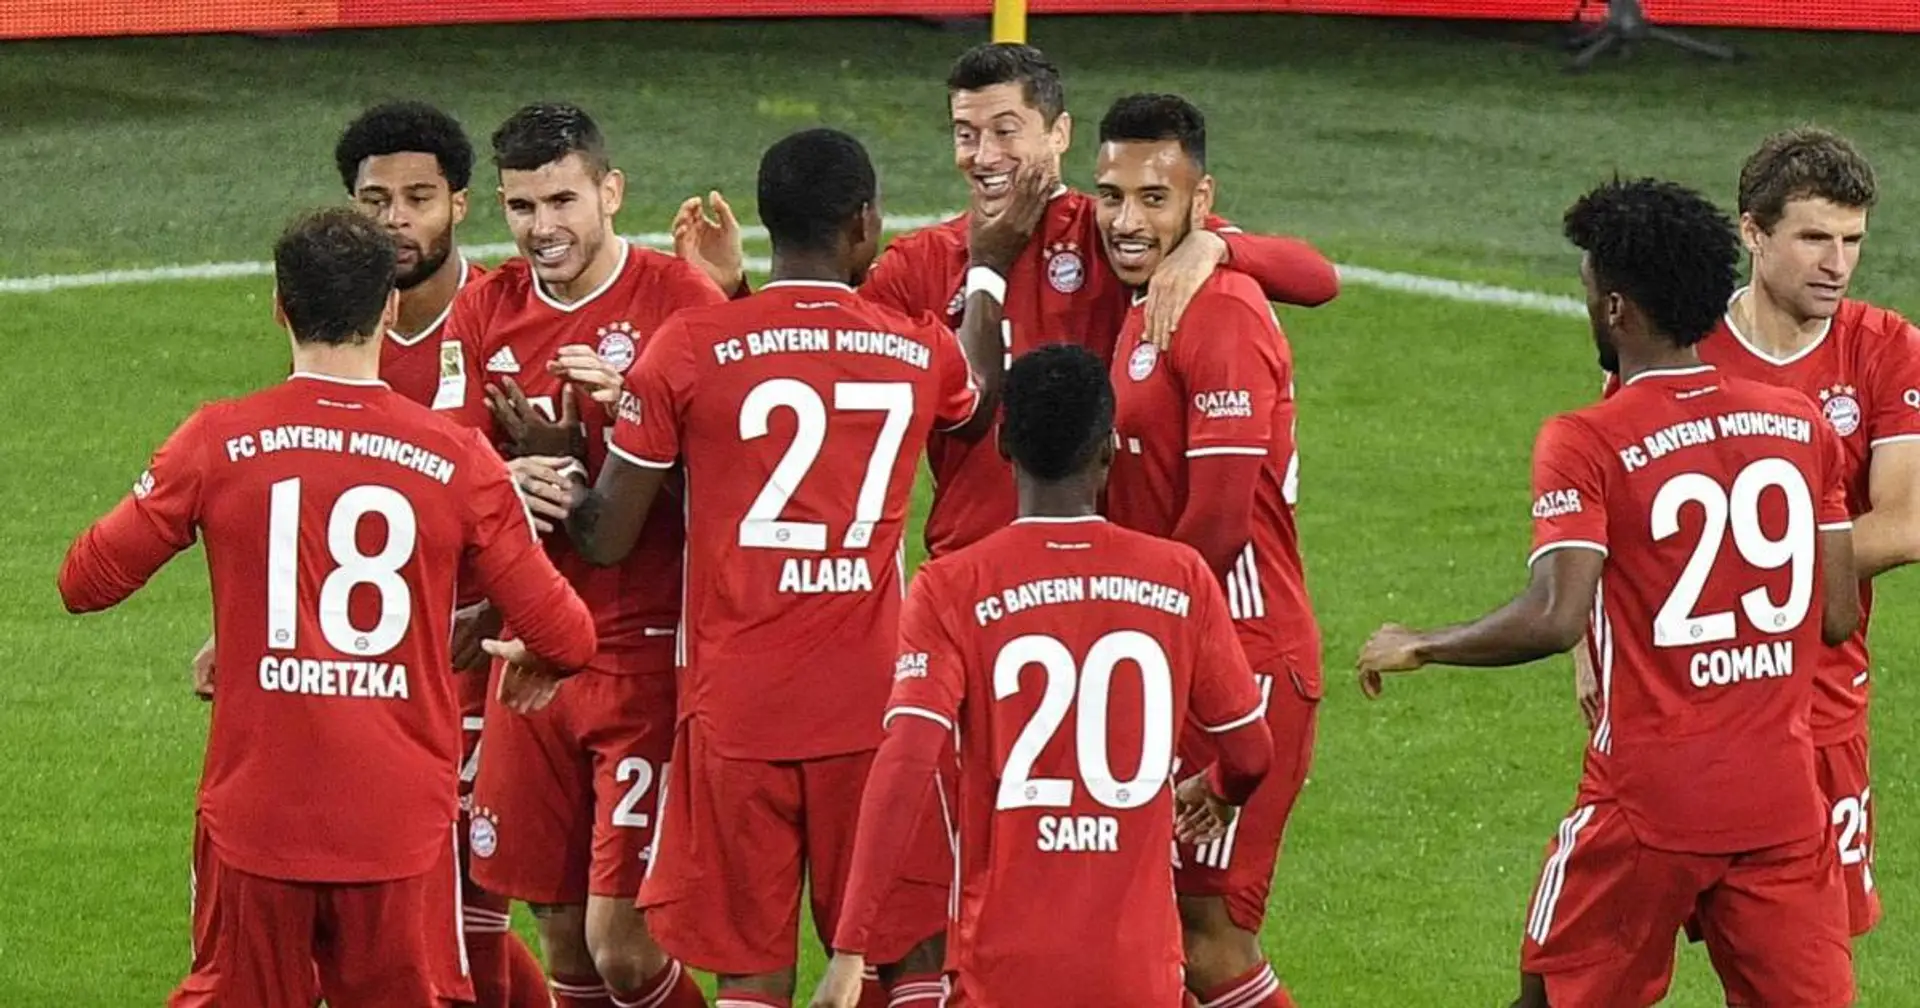 27 Tore in 7 Spielen: Die Bayern egalisieren uralten Rekord der Gladbacher